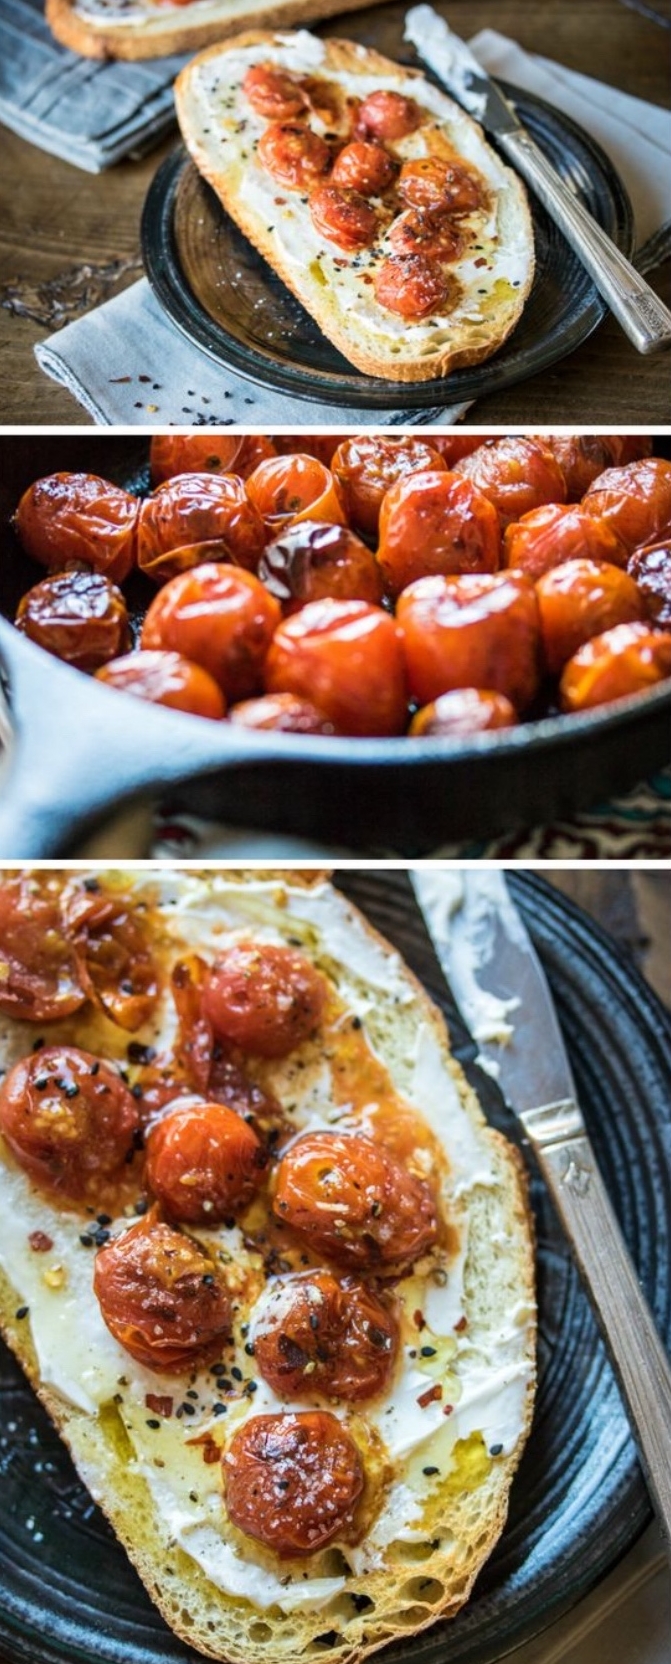 idée de recette de tapas, exemple recette facile et rapide, pain tartiné de mascarpone avec des tomates cerise rôtis au four et épices